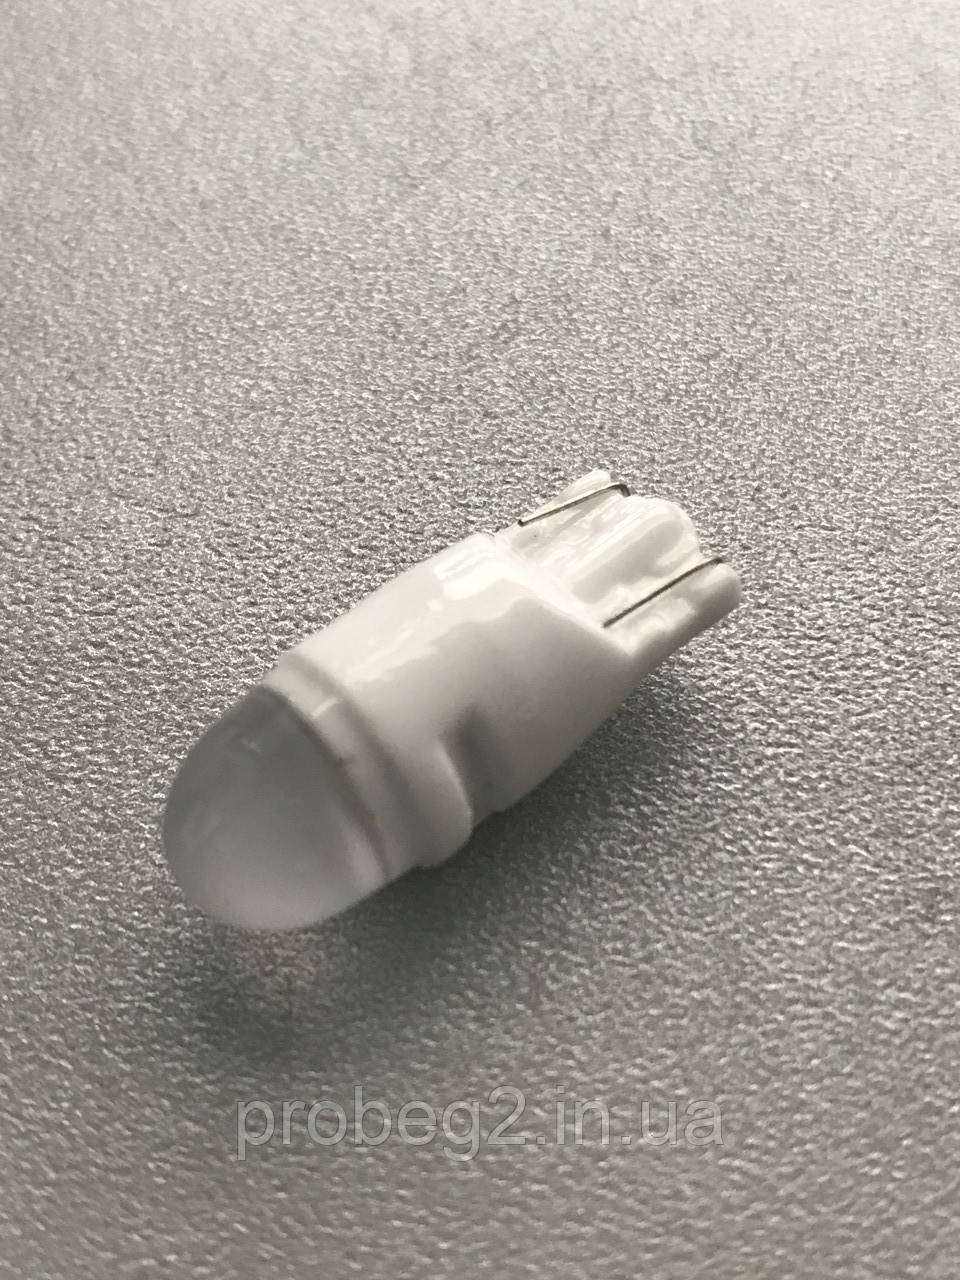 Світлодіодна лампа T10 W5W кераміка з зазорами від перепадів напруги 10-15v